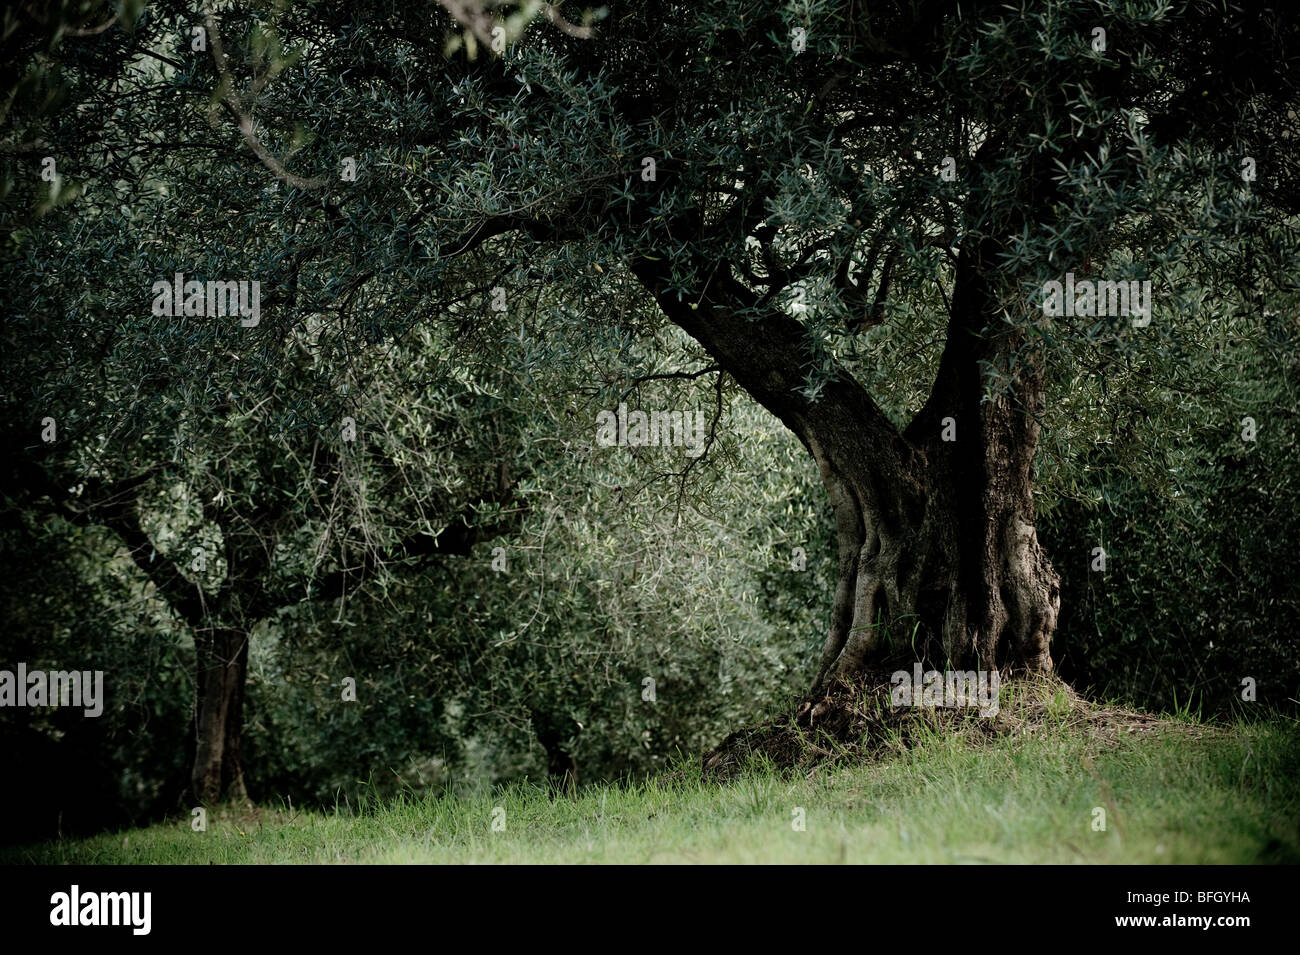 Les arbres d'Olive Grove en prêt pour la récolte, Chieti, Abruzzes, Italie Banque D'Images